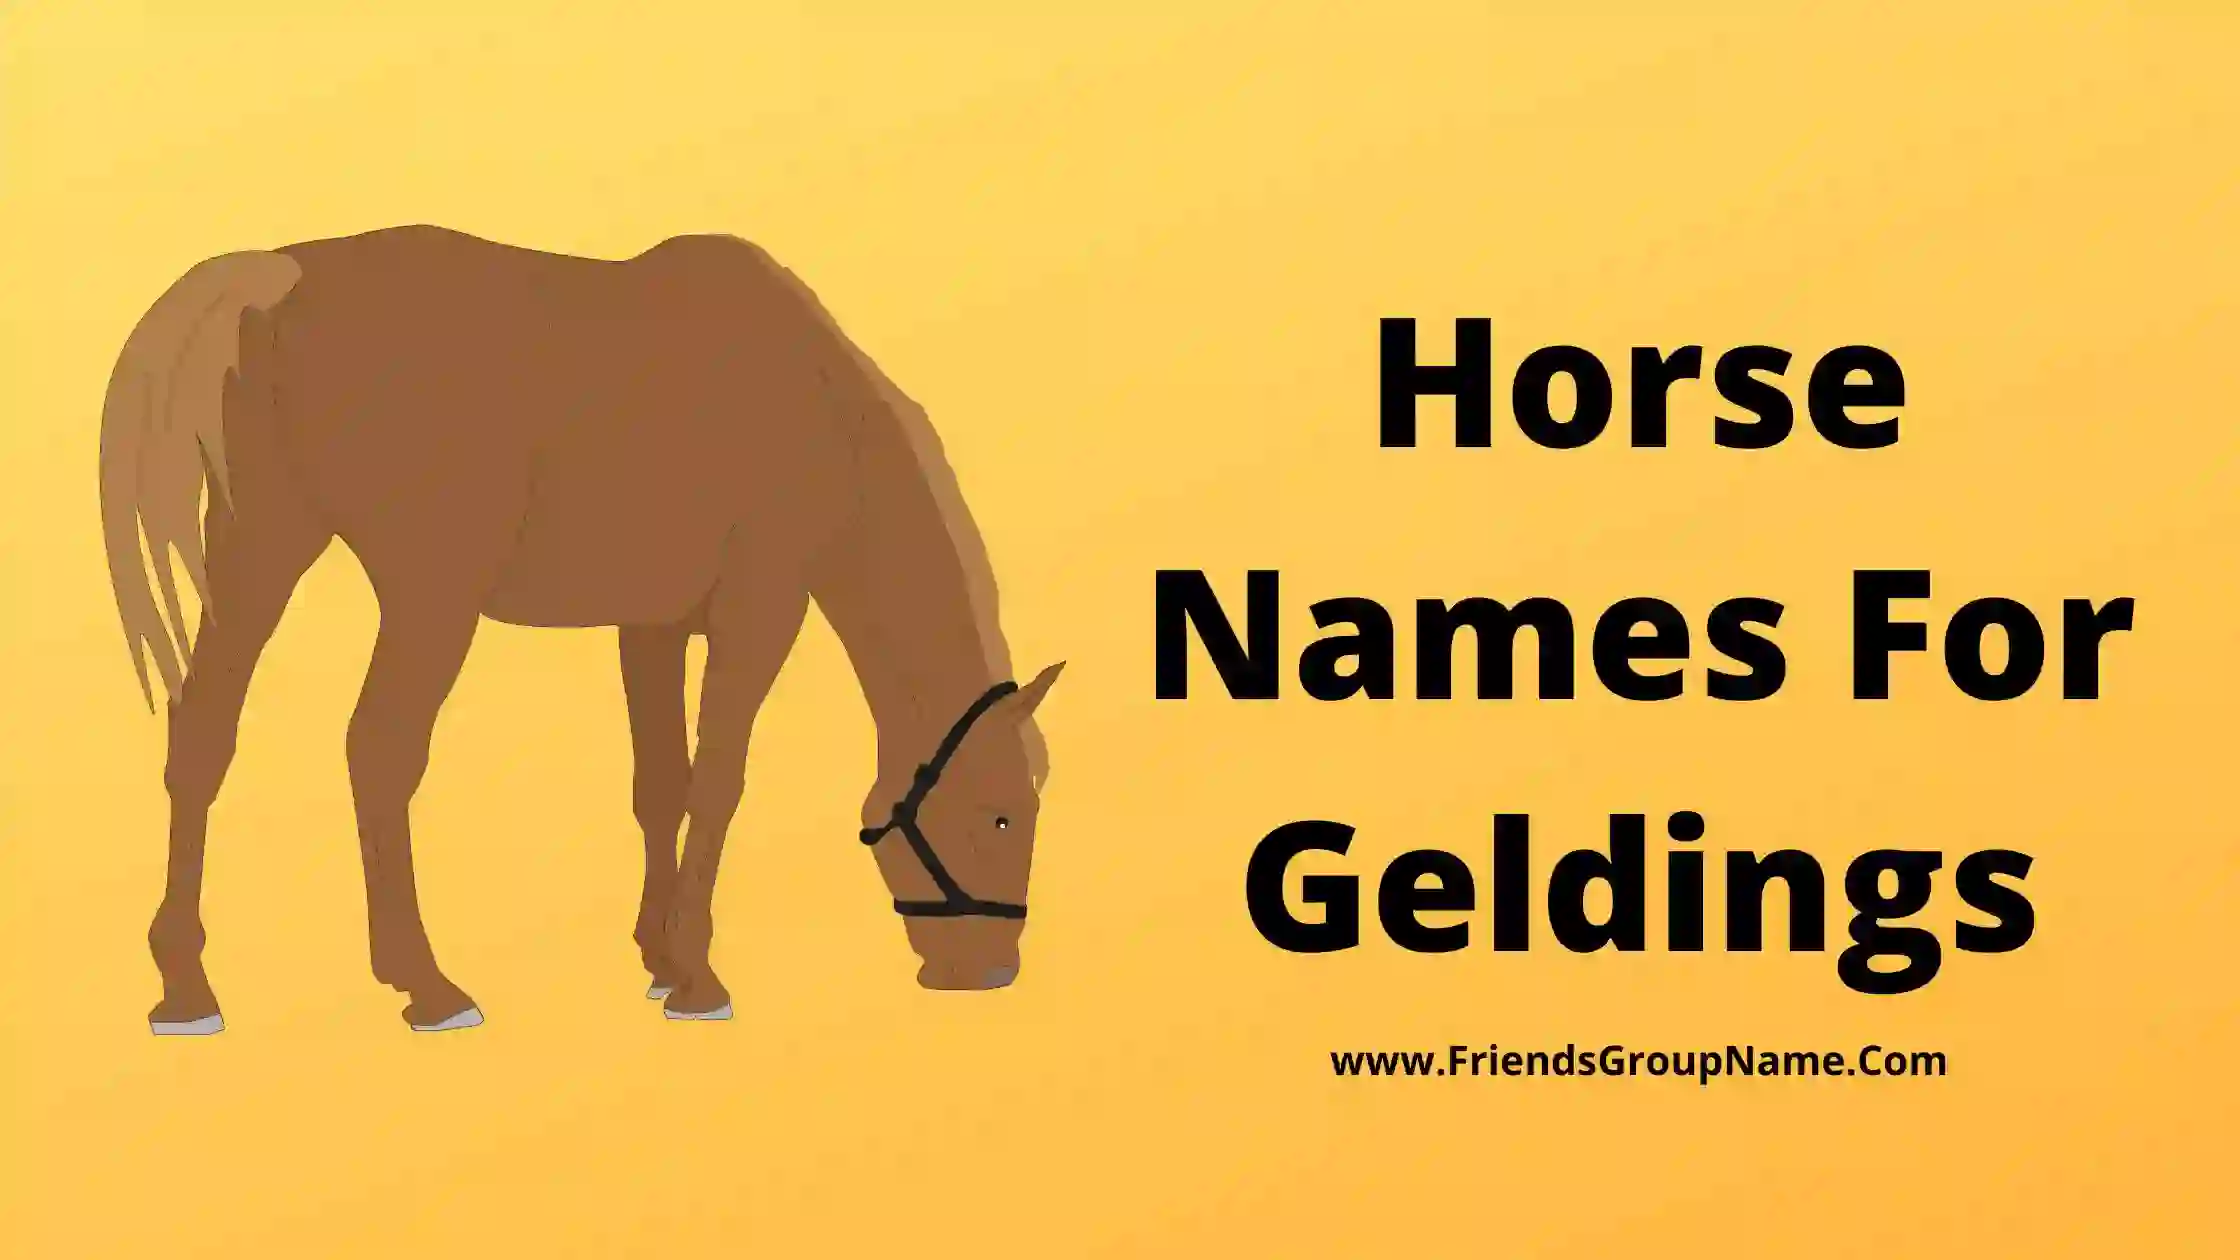 Horse Names For Geldings